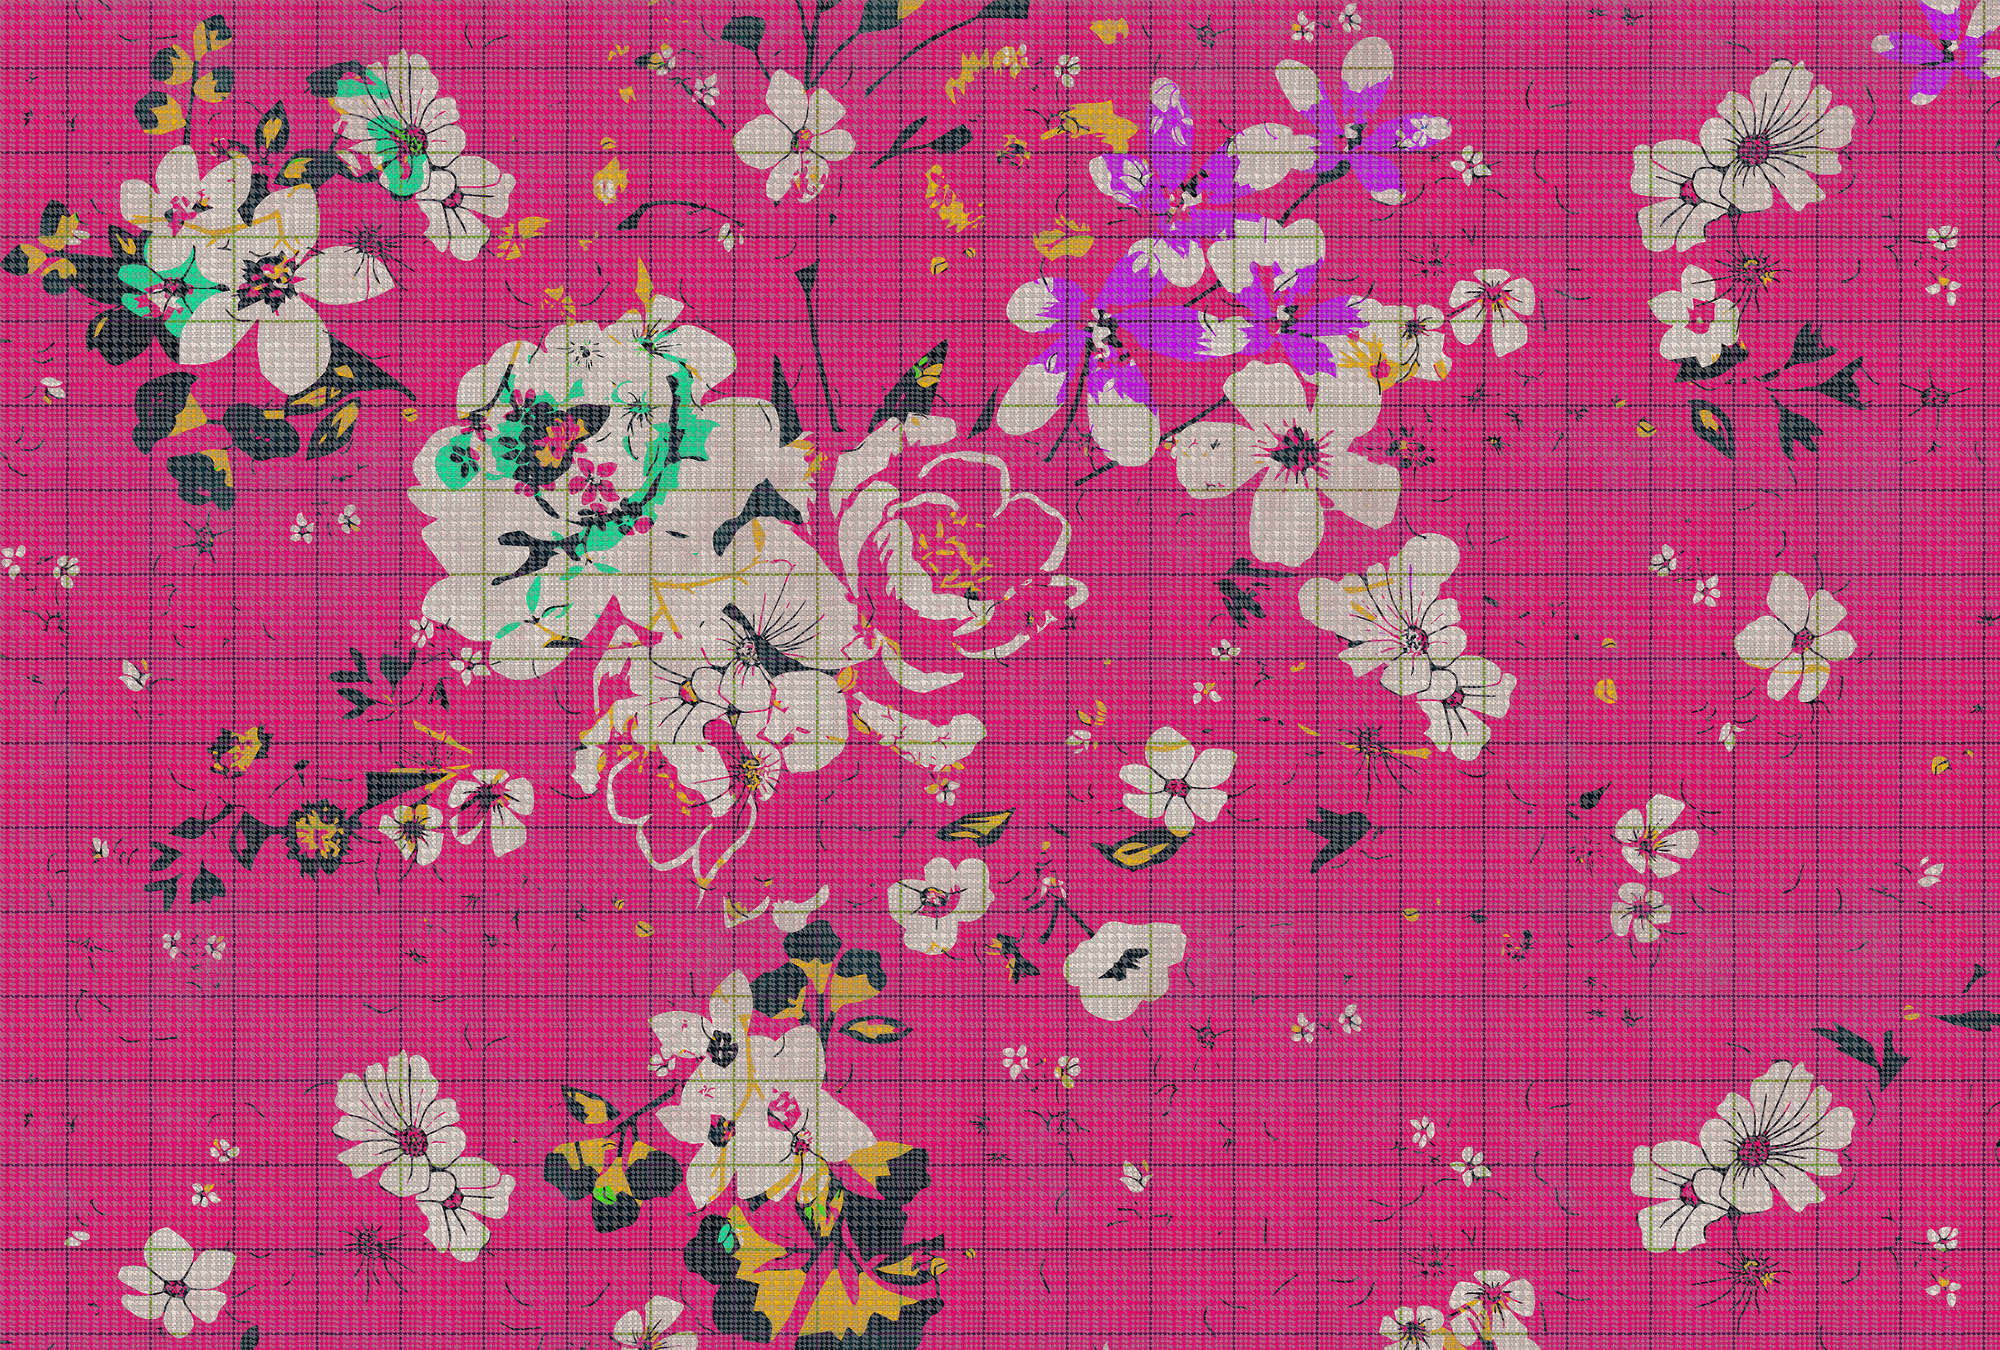             Flower plaid 2 - Fotomurali a quadri con mosaico di fiori colorati Rosa - Verde, Rosa | Pile liscio premium
        